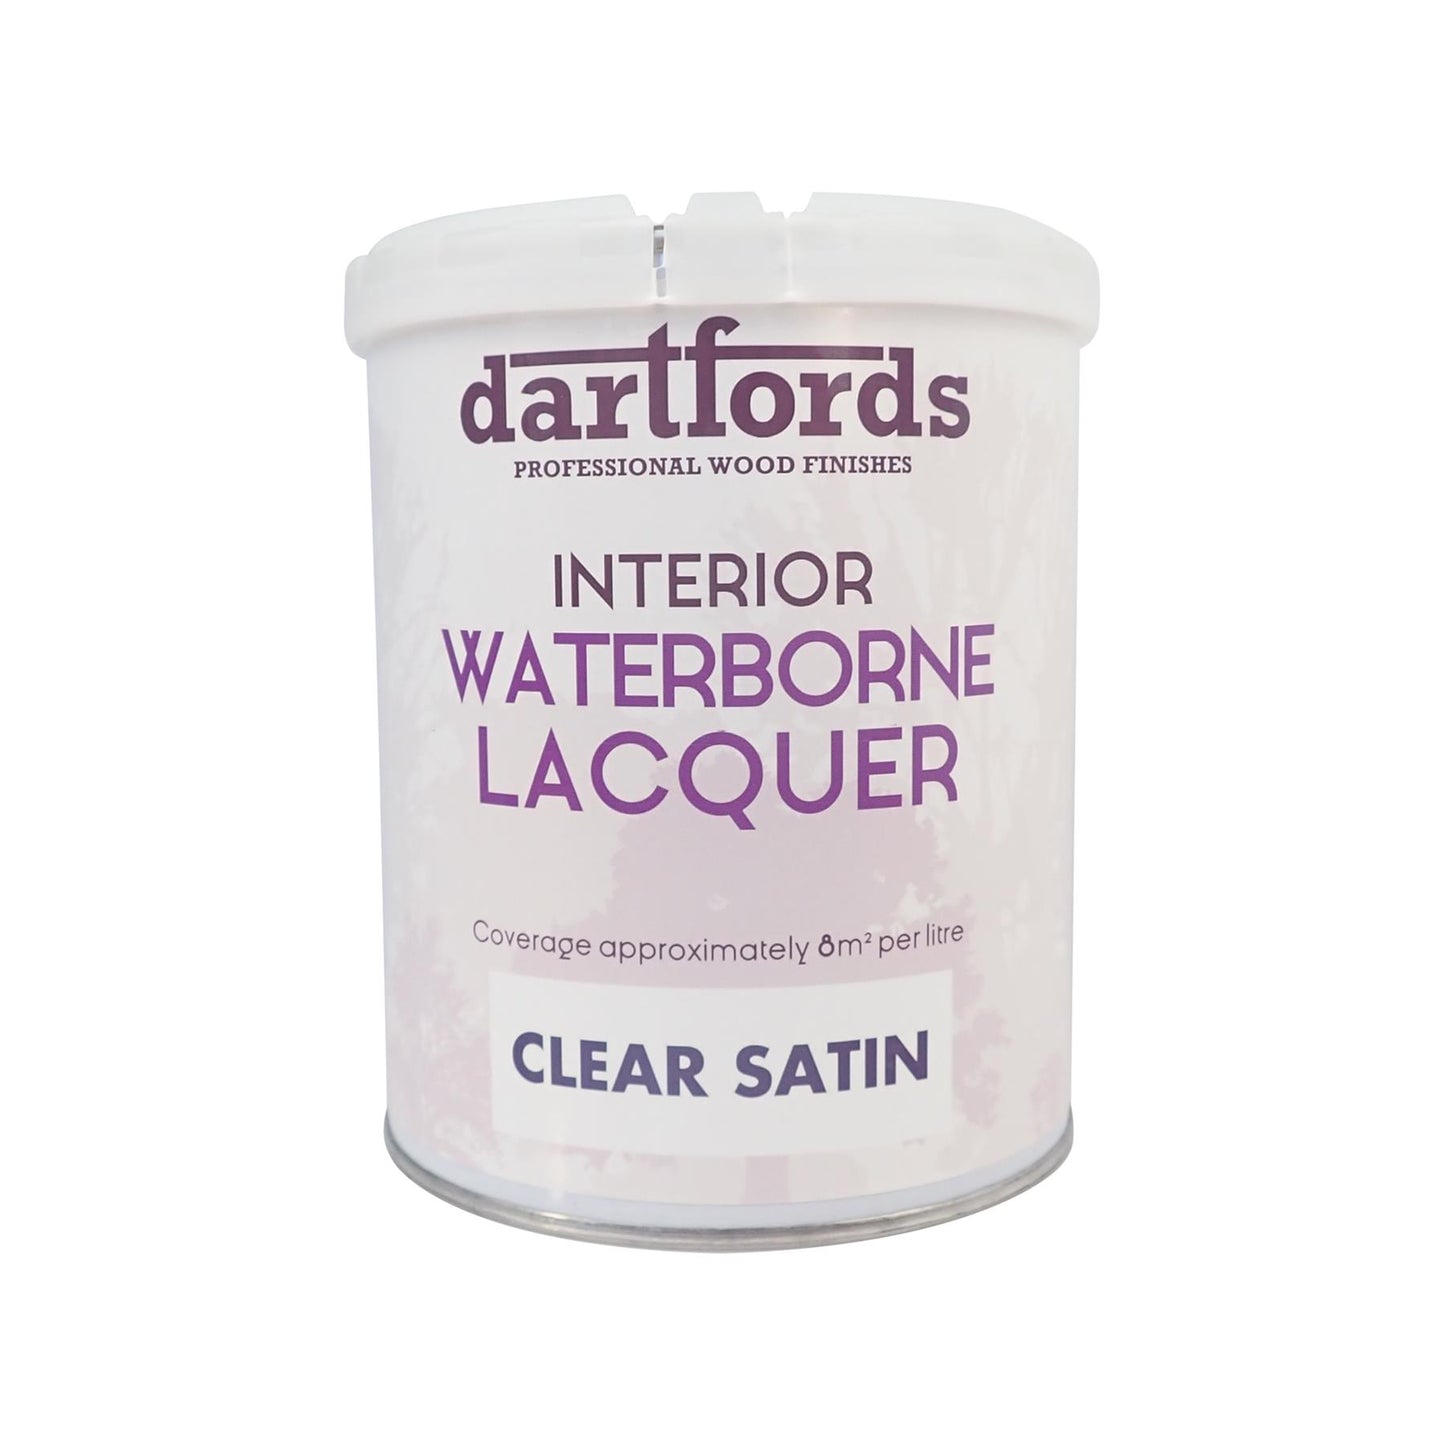 dartfords Satin Clear Interior Waterborne Lacquer - 1 litre Tin